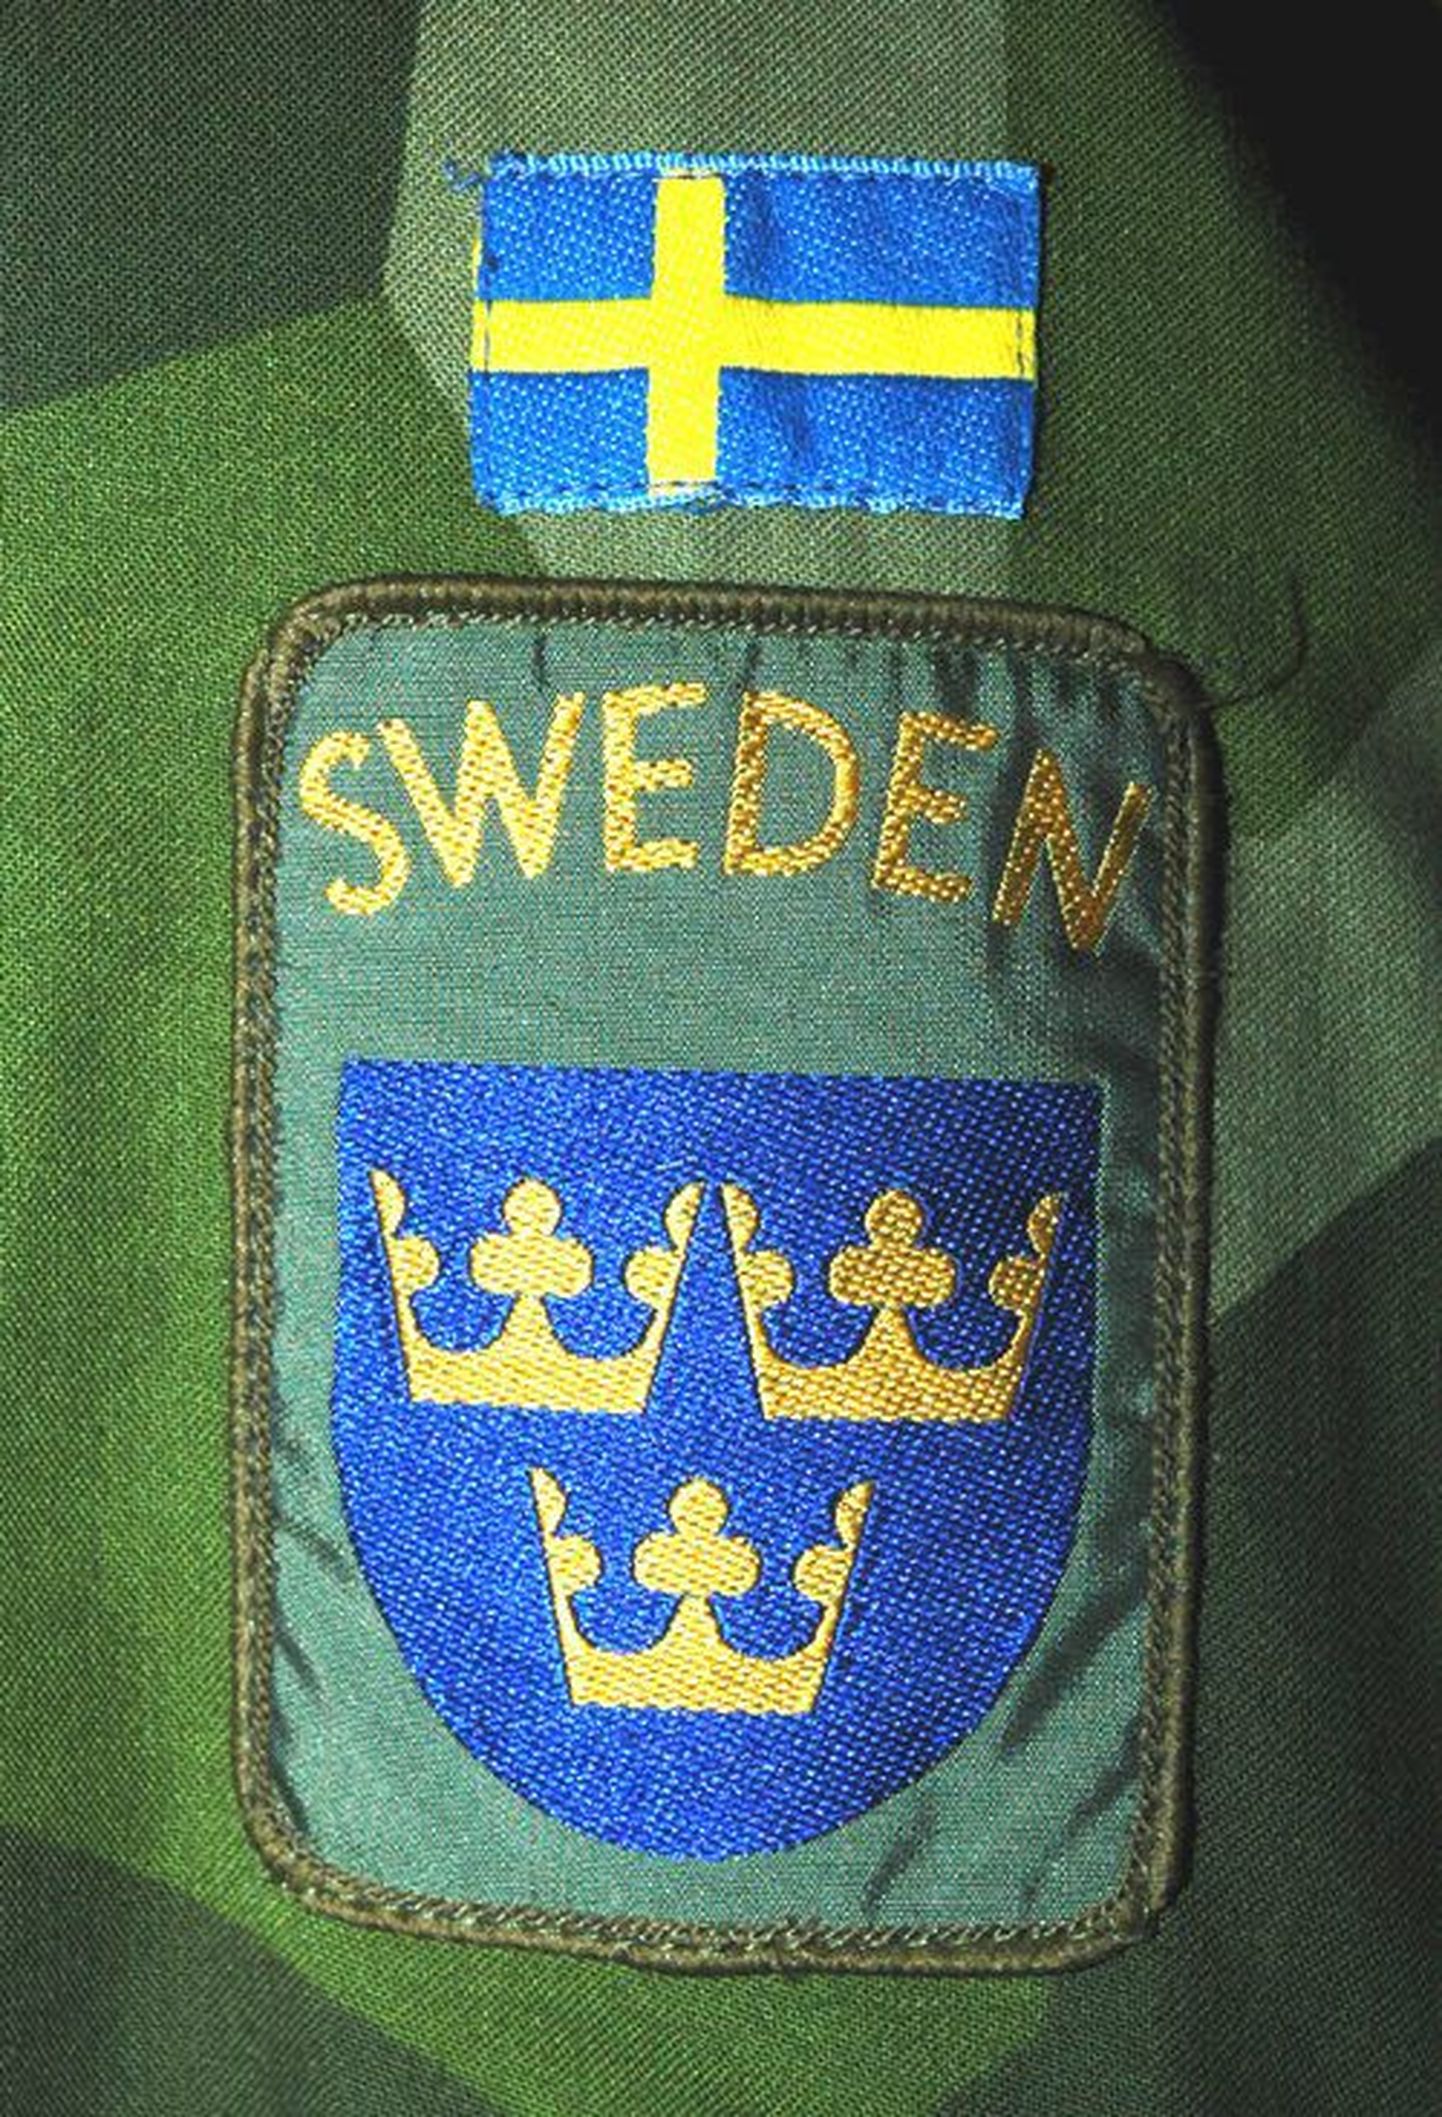 ISAFi rootslasest sõduri embleem vormiriietusel.